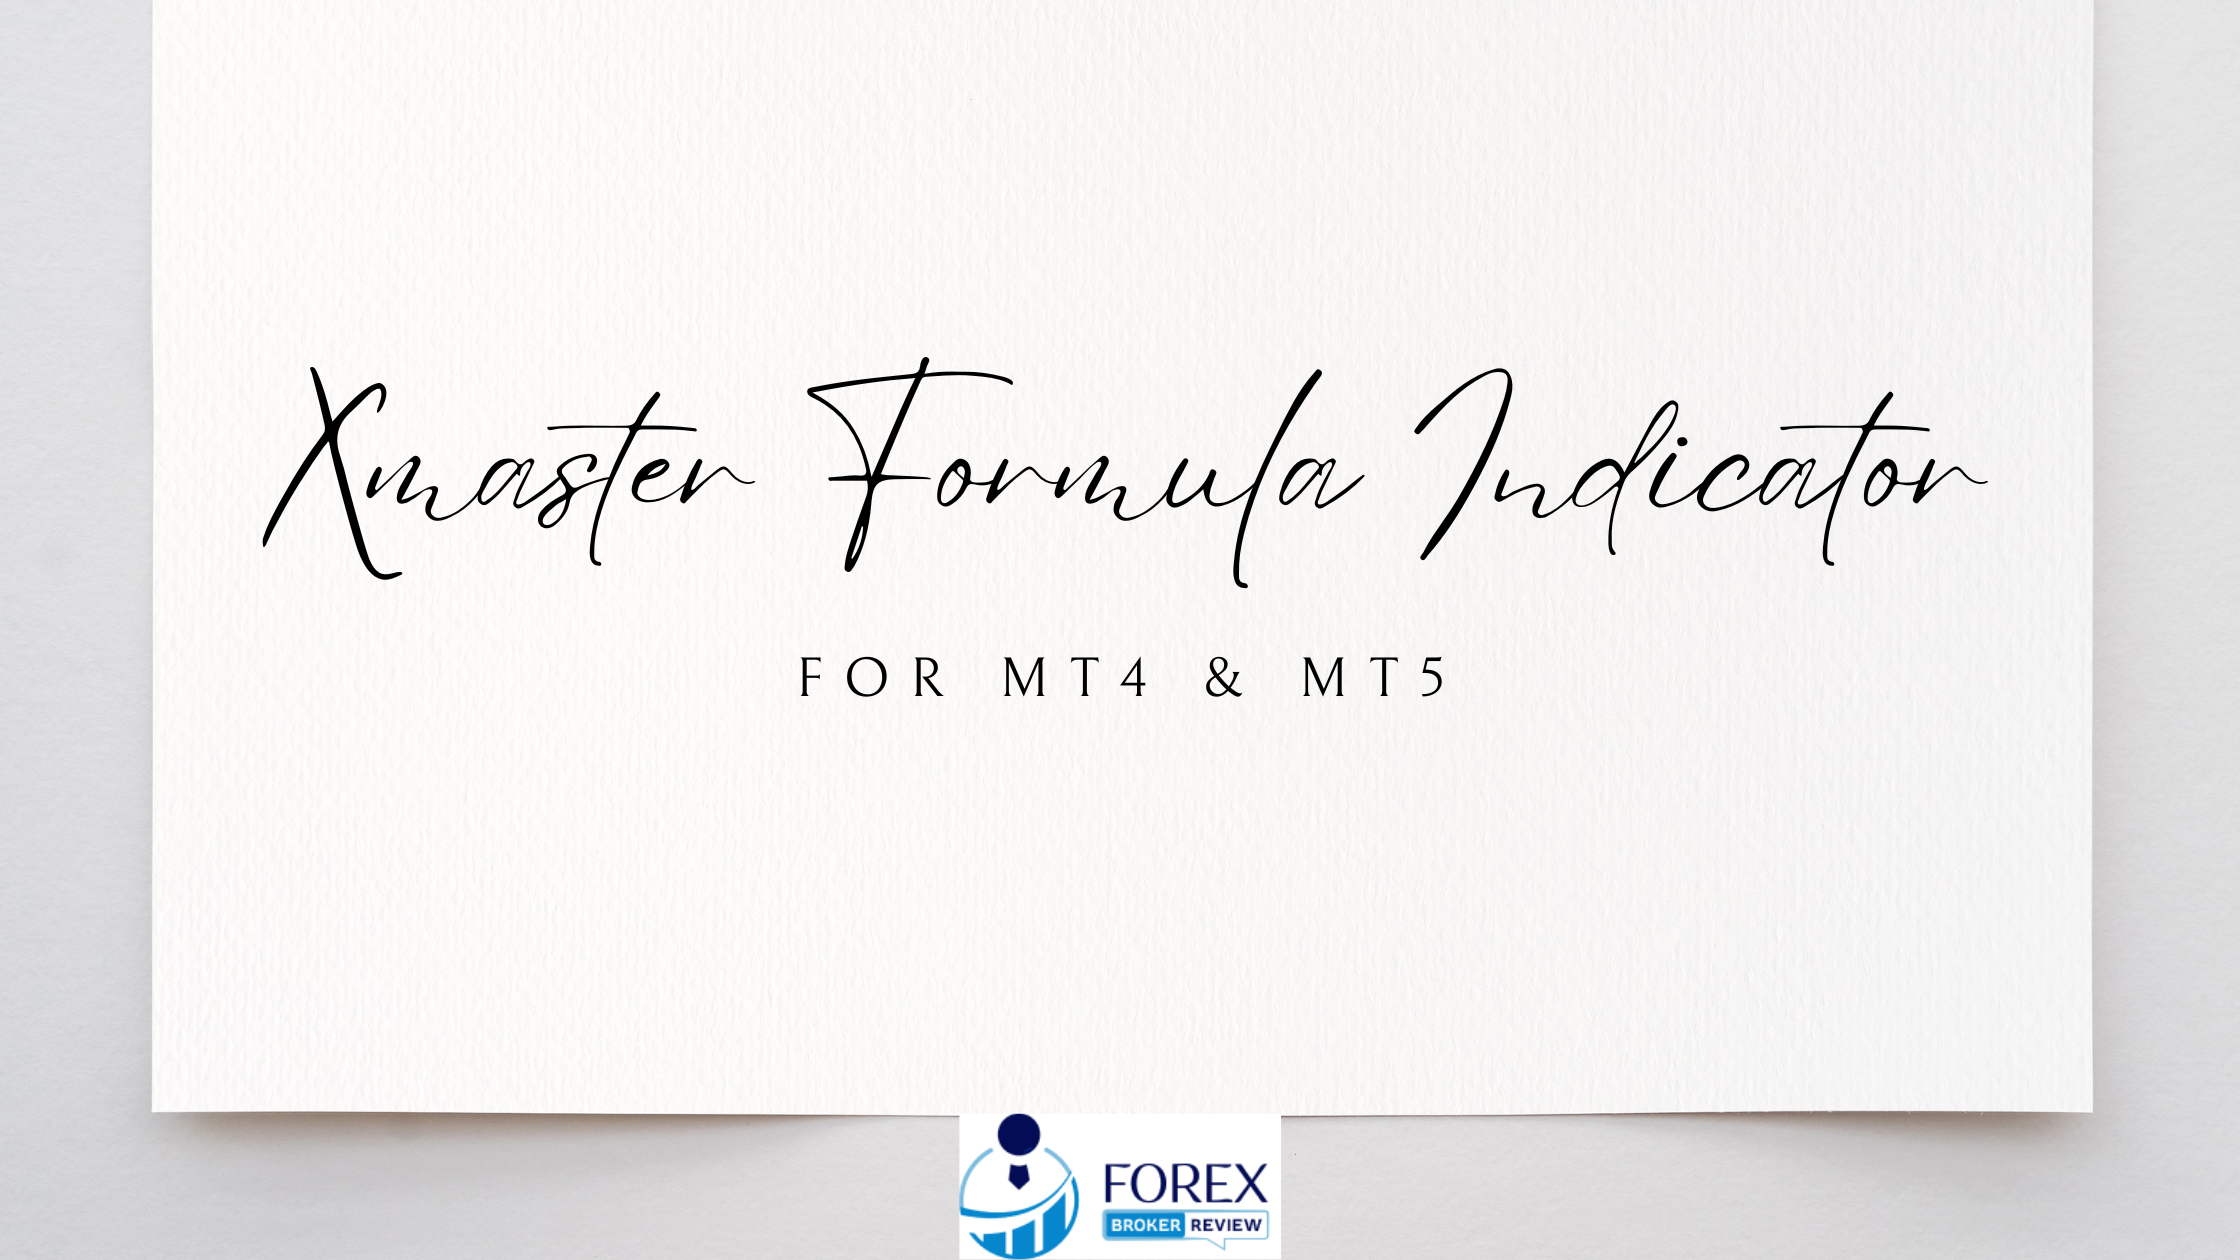 xmaster formula indicator